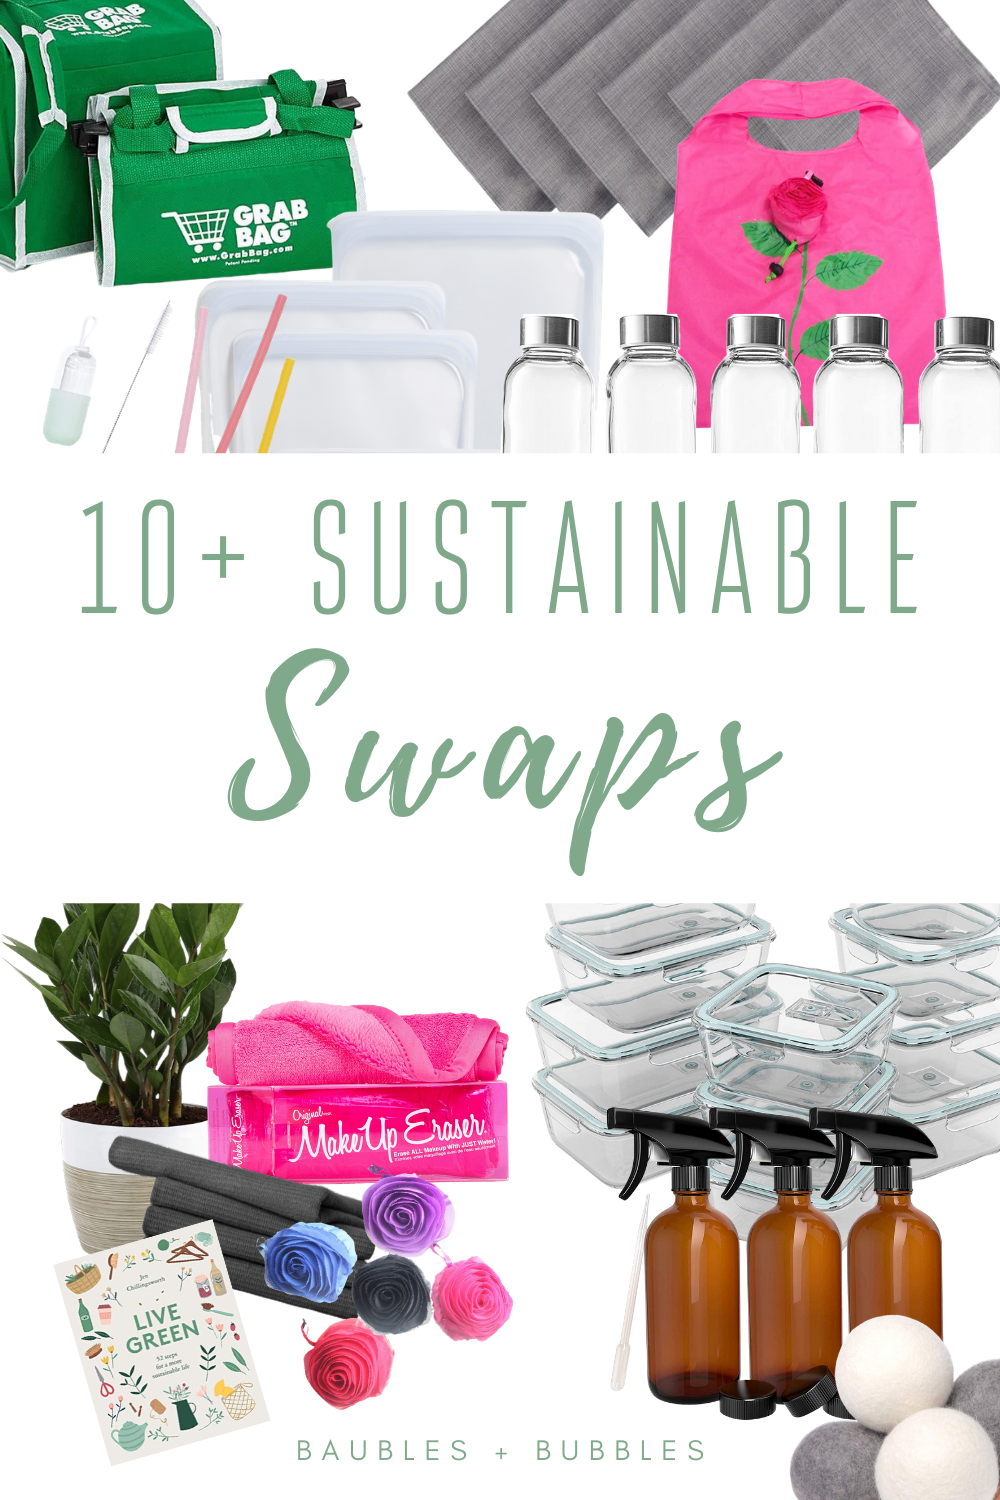 10+ Sustainable Swaps